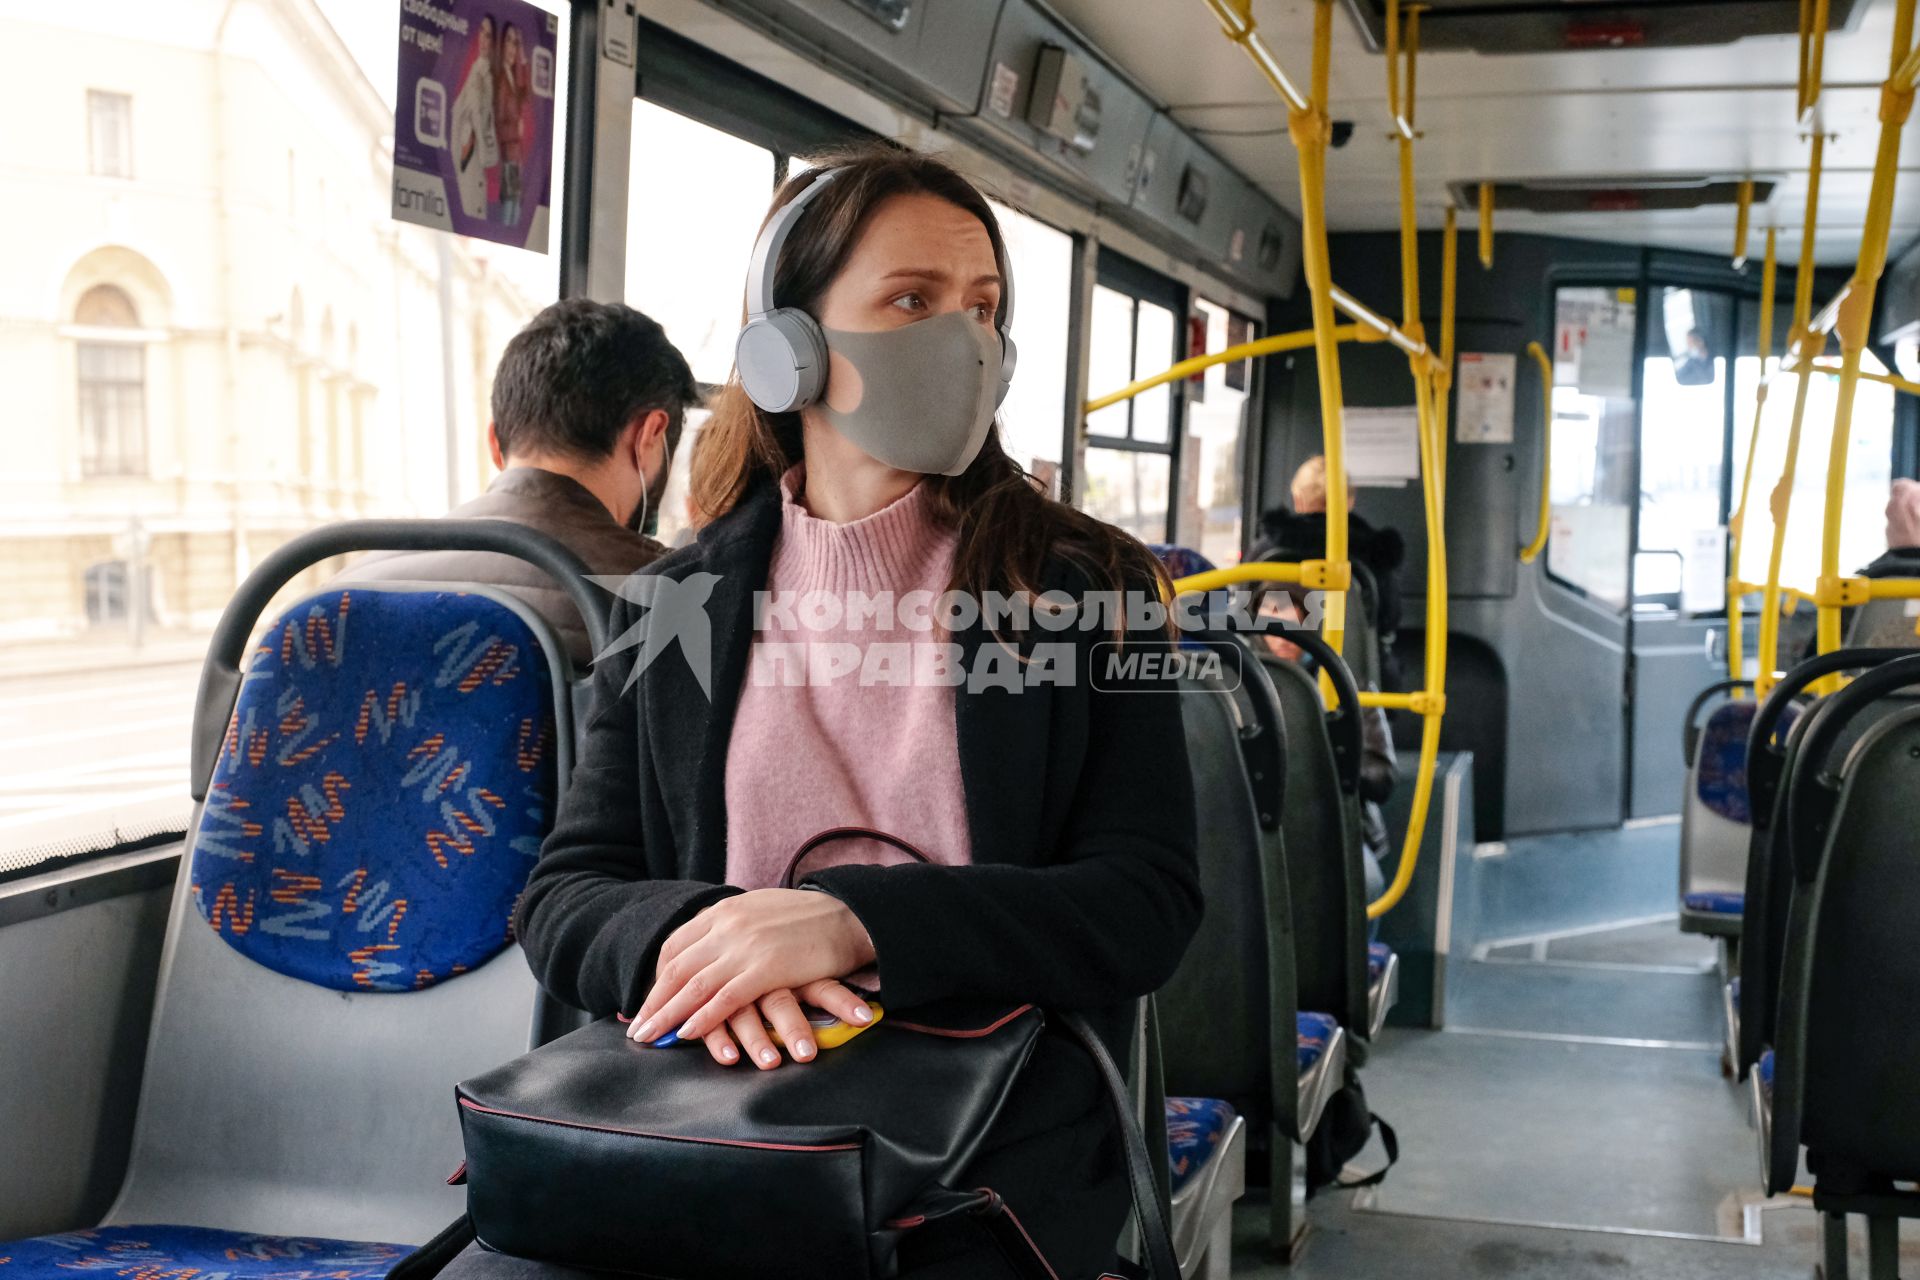 Санкт-Петербург. Пассажиры в общественном транспорте в медицинских масках.